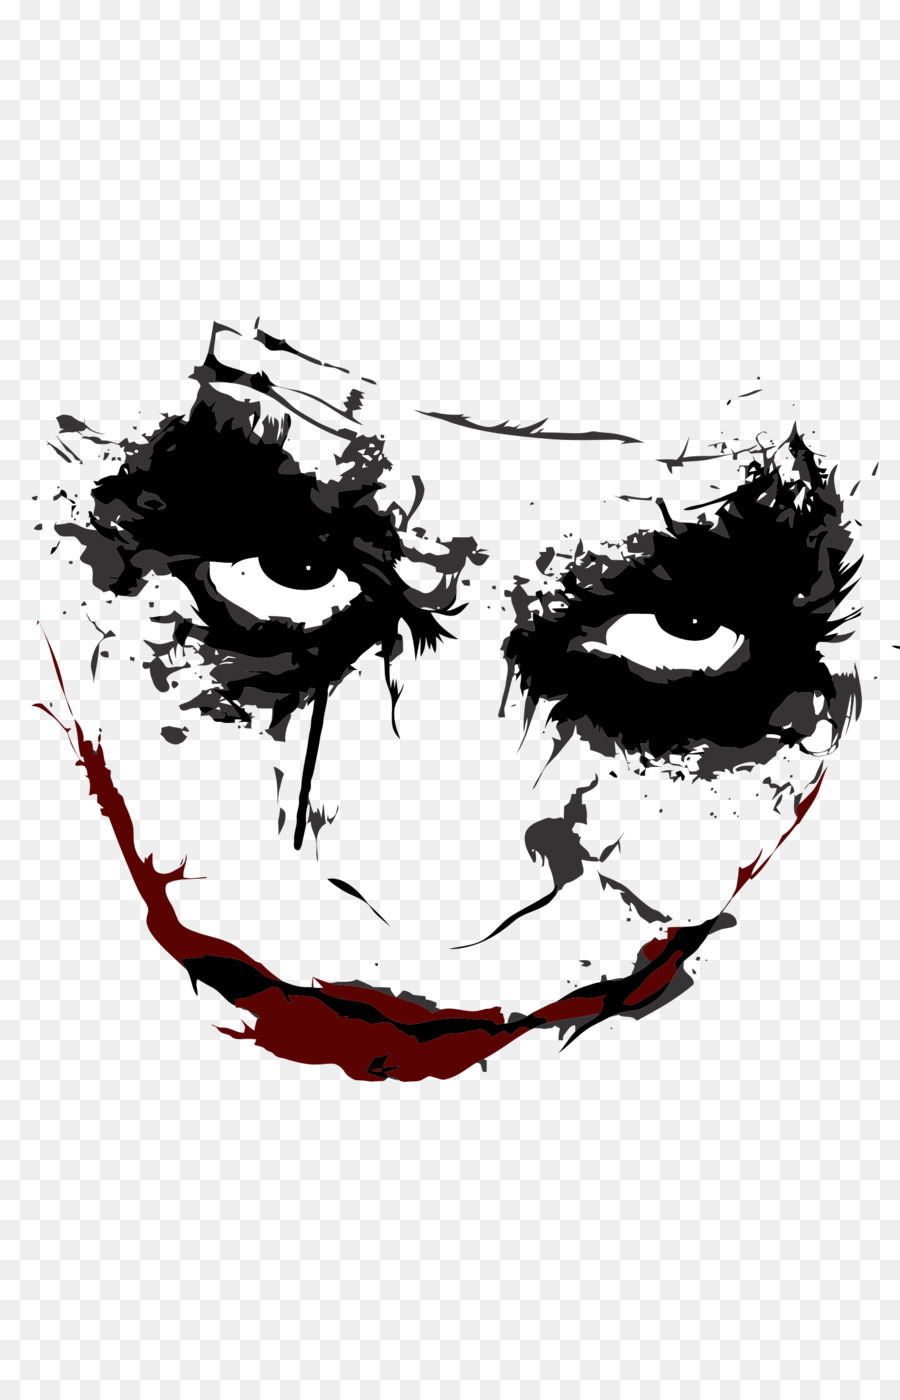 Joker Batman Harley Quinn Tattoo - joker png download - 1600*2460 - Free Transparent Joker png Download.